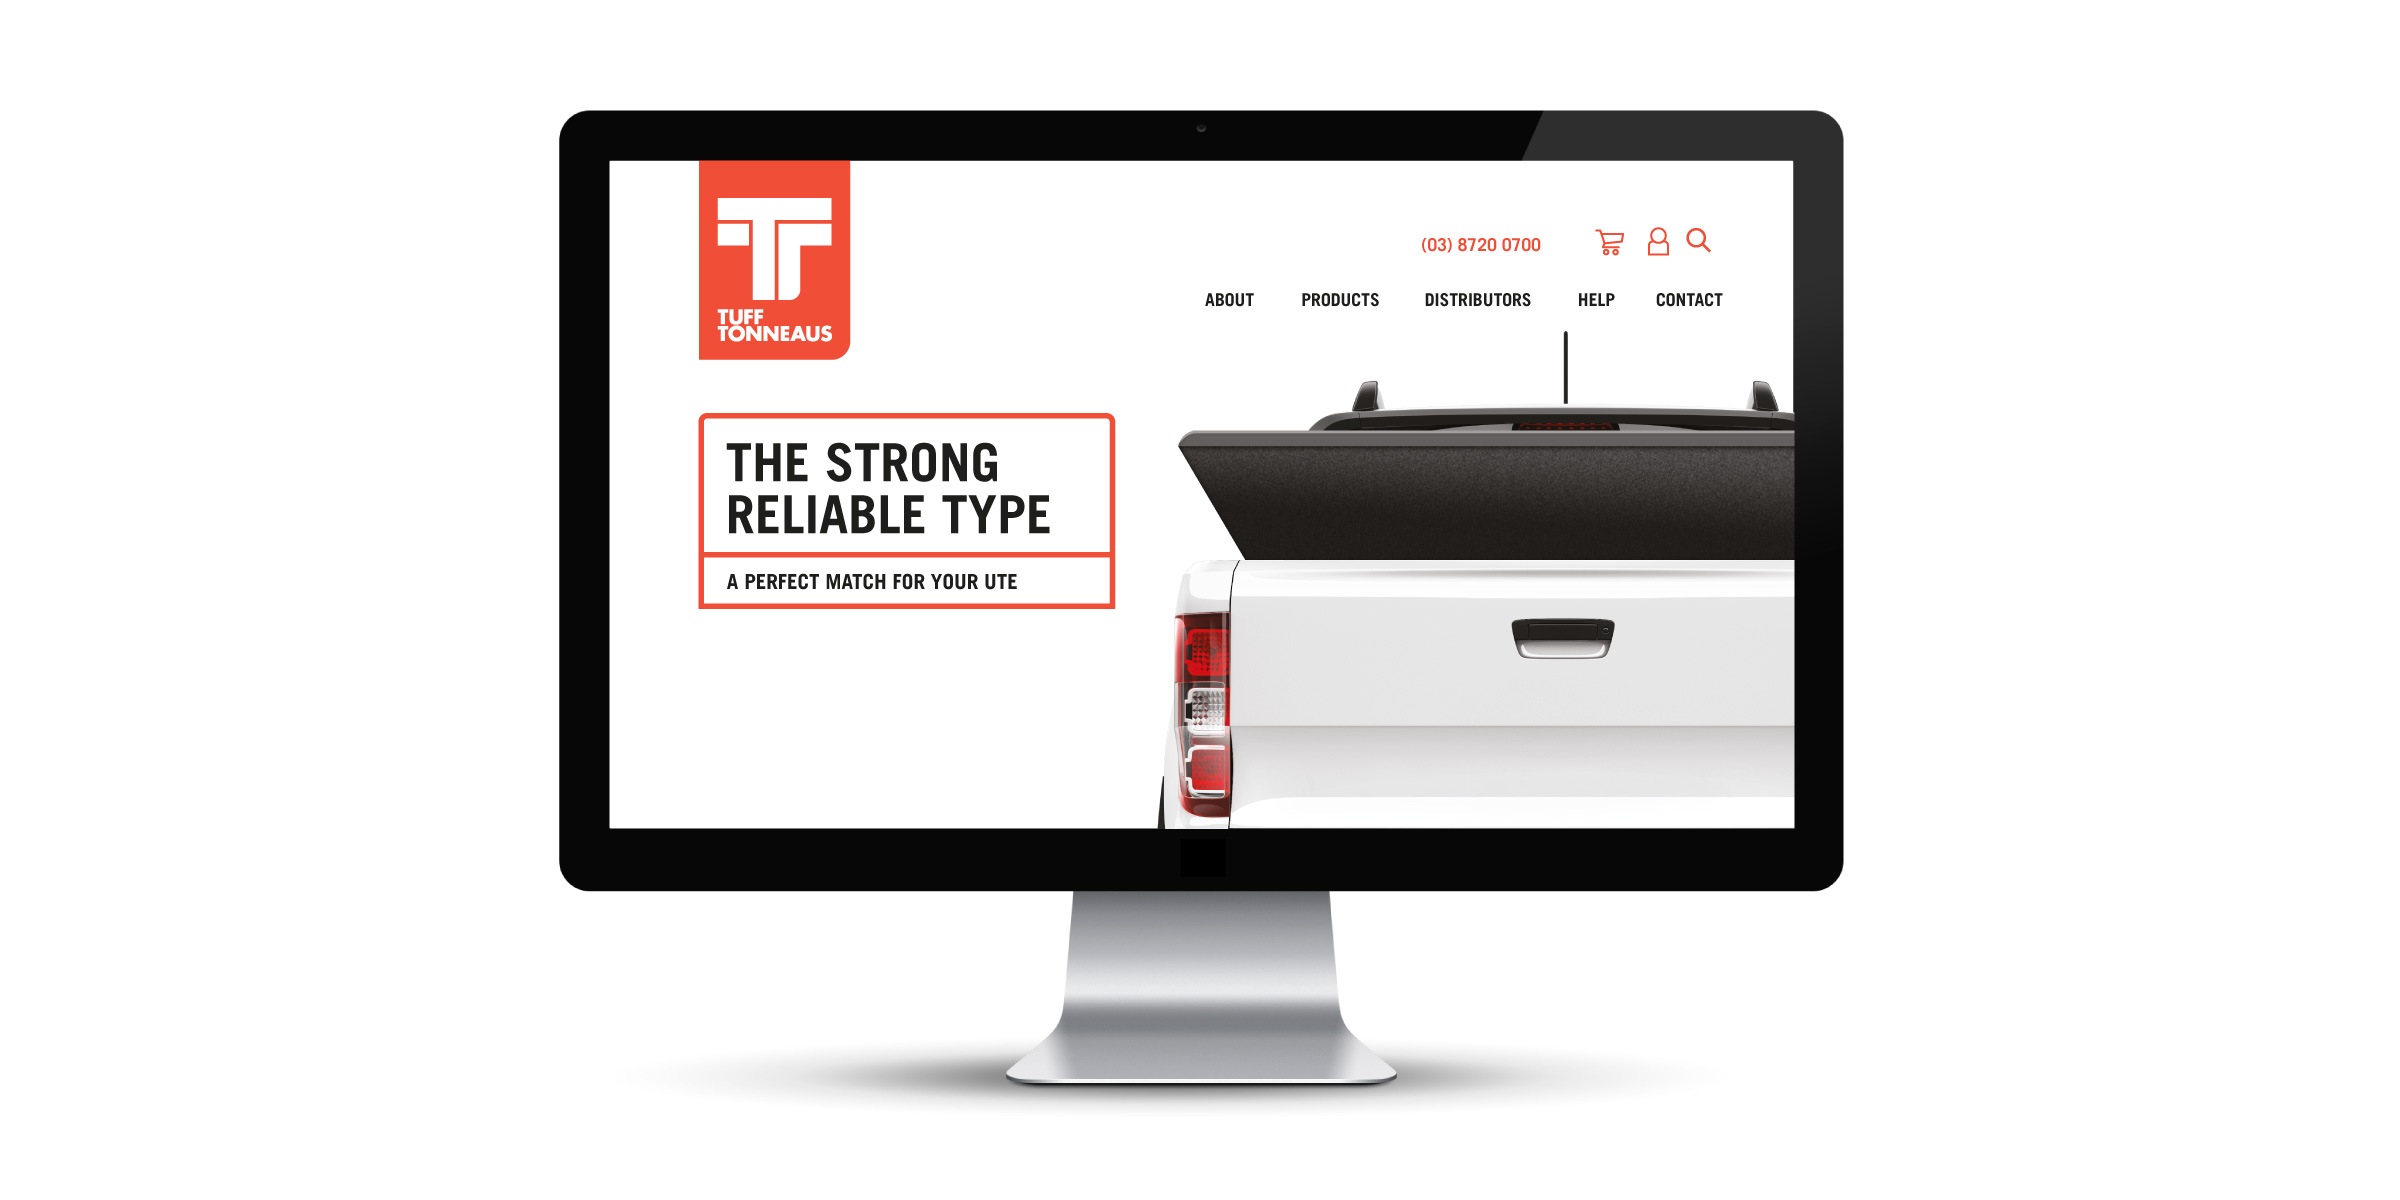 Tuff Tonneaus Website Design